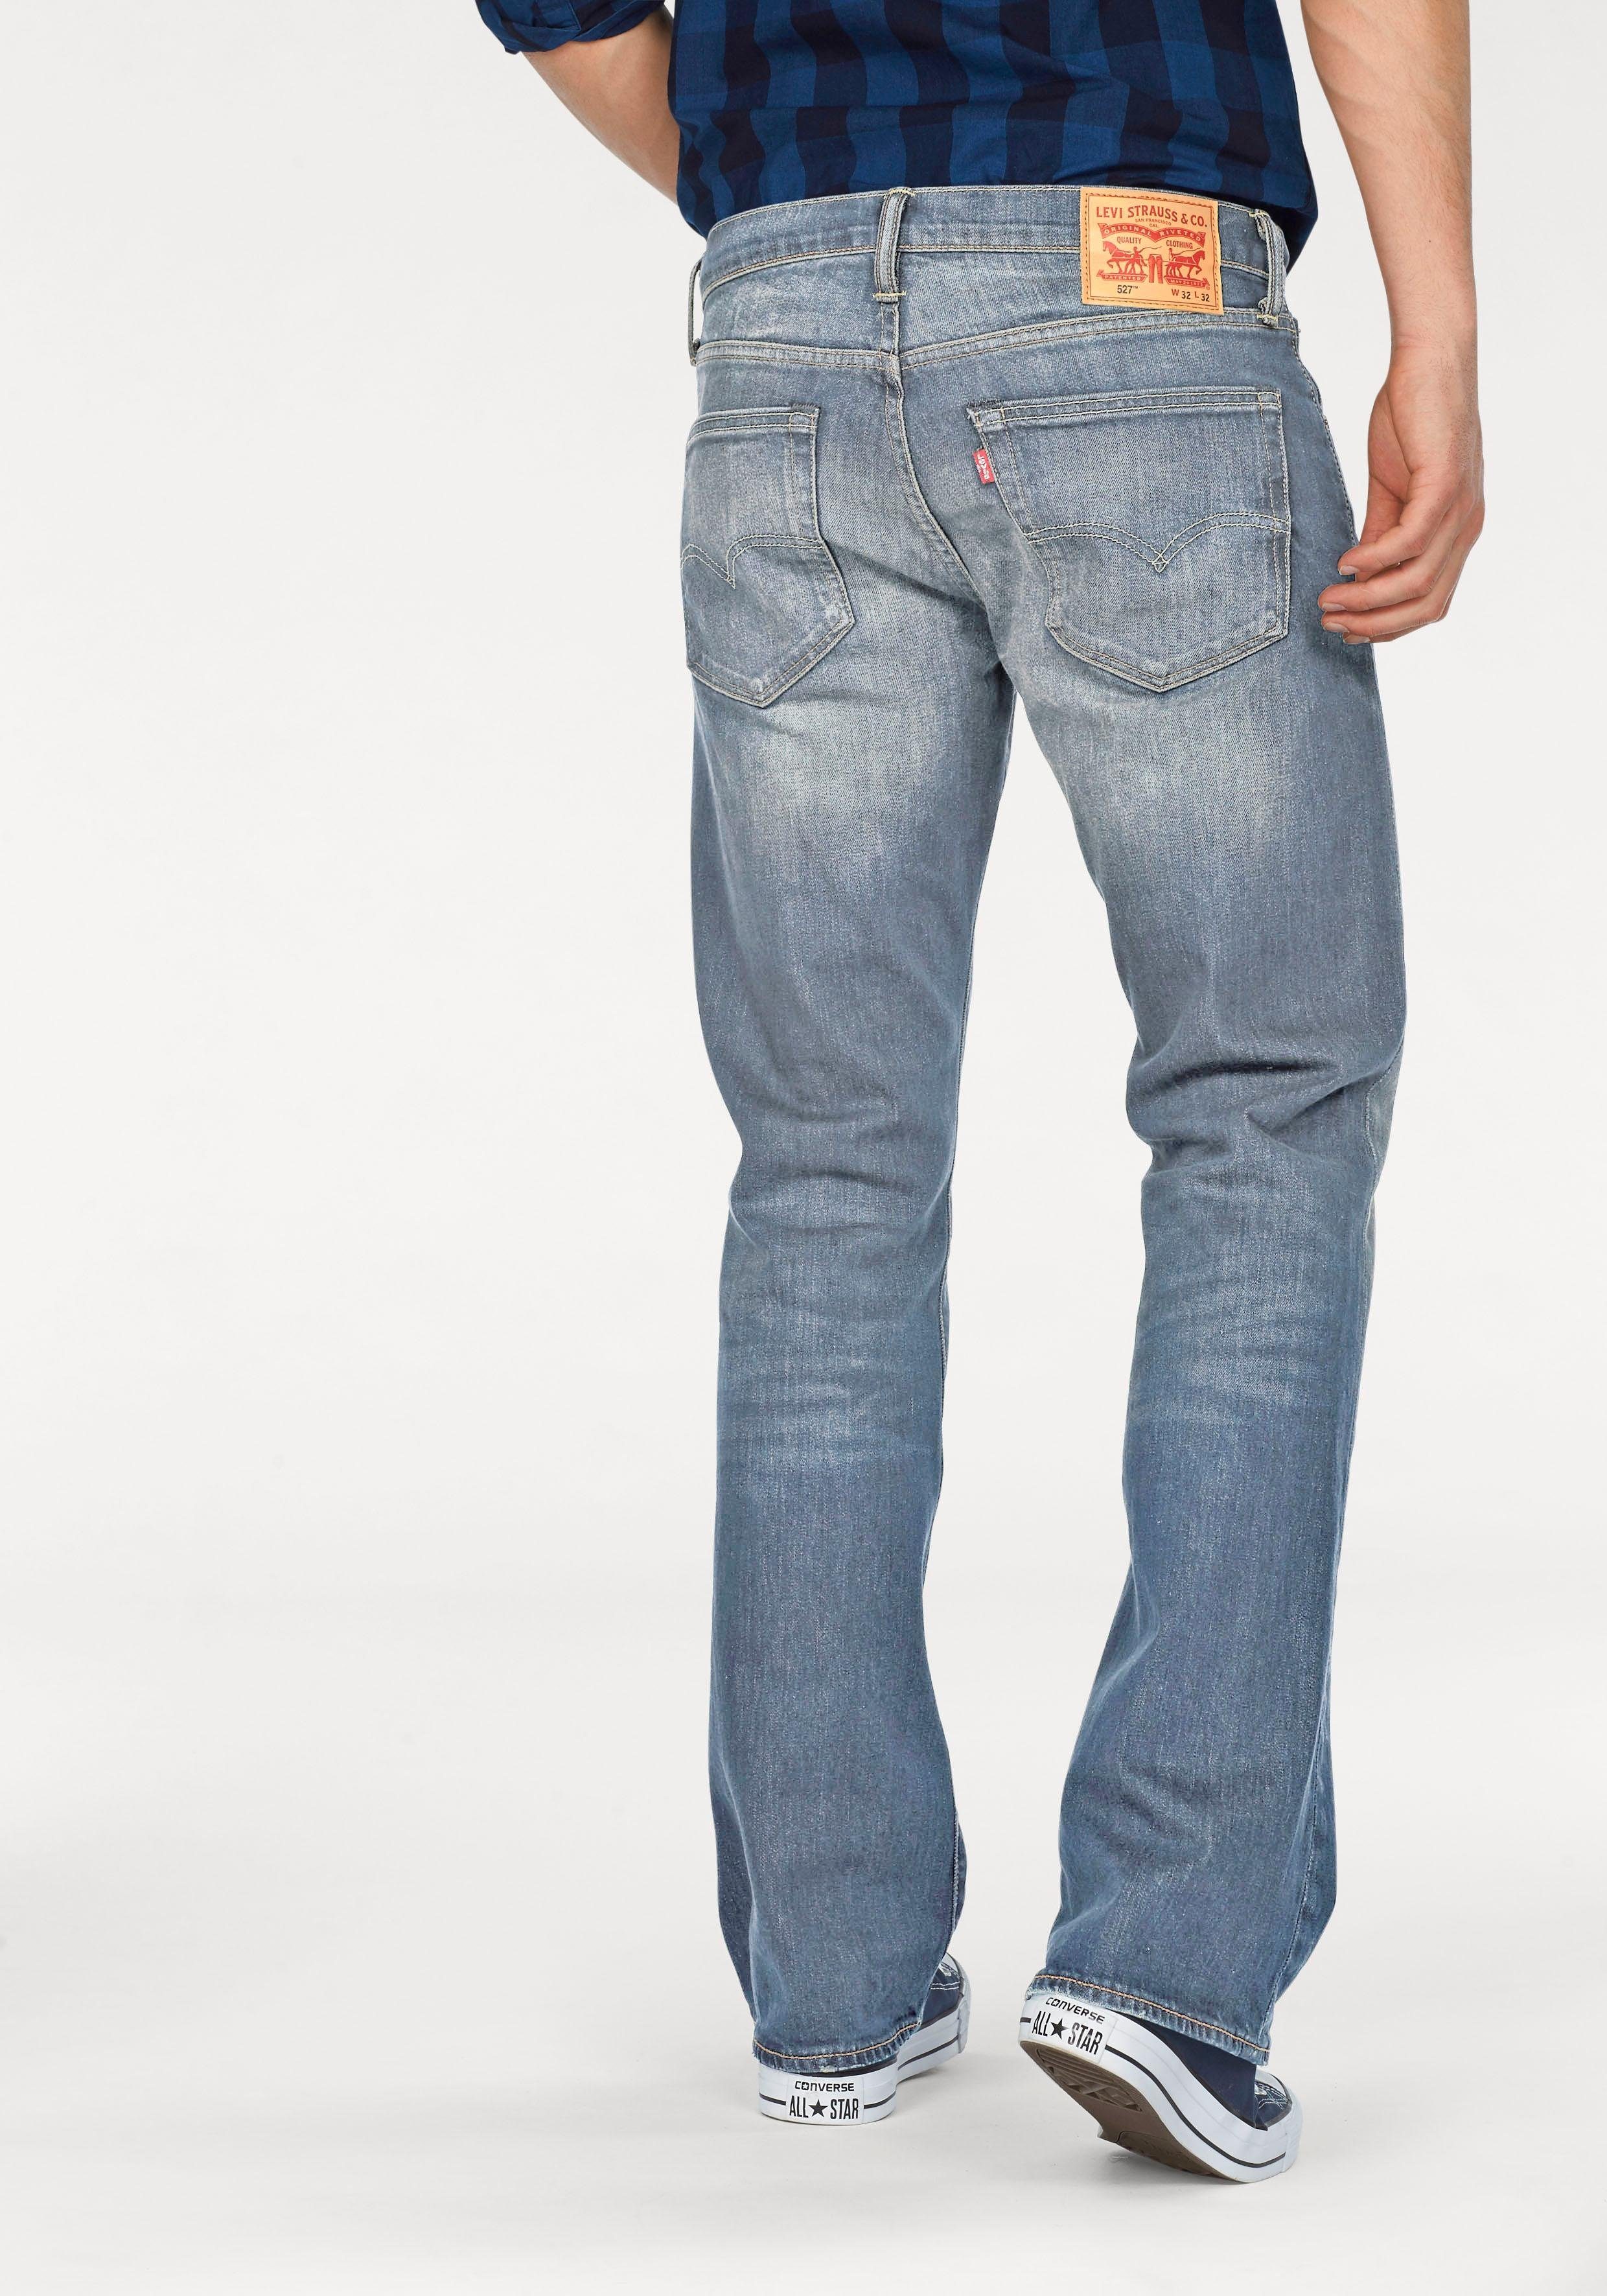 Levi's Herren Jeans online kaufen | OTTO